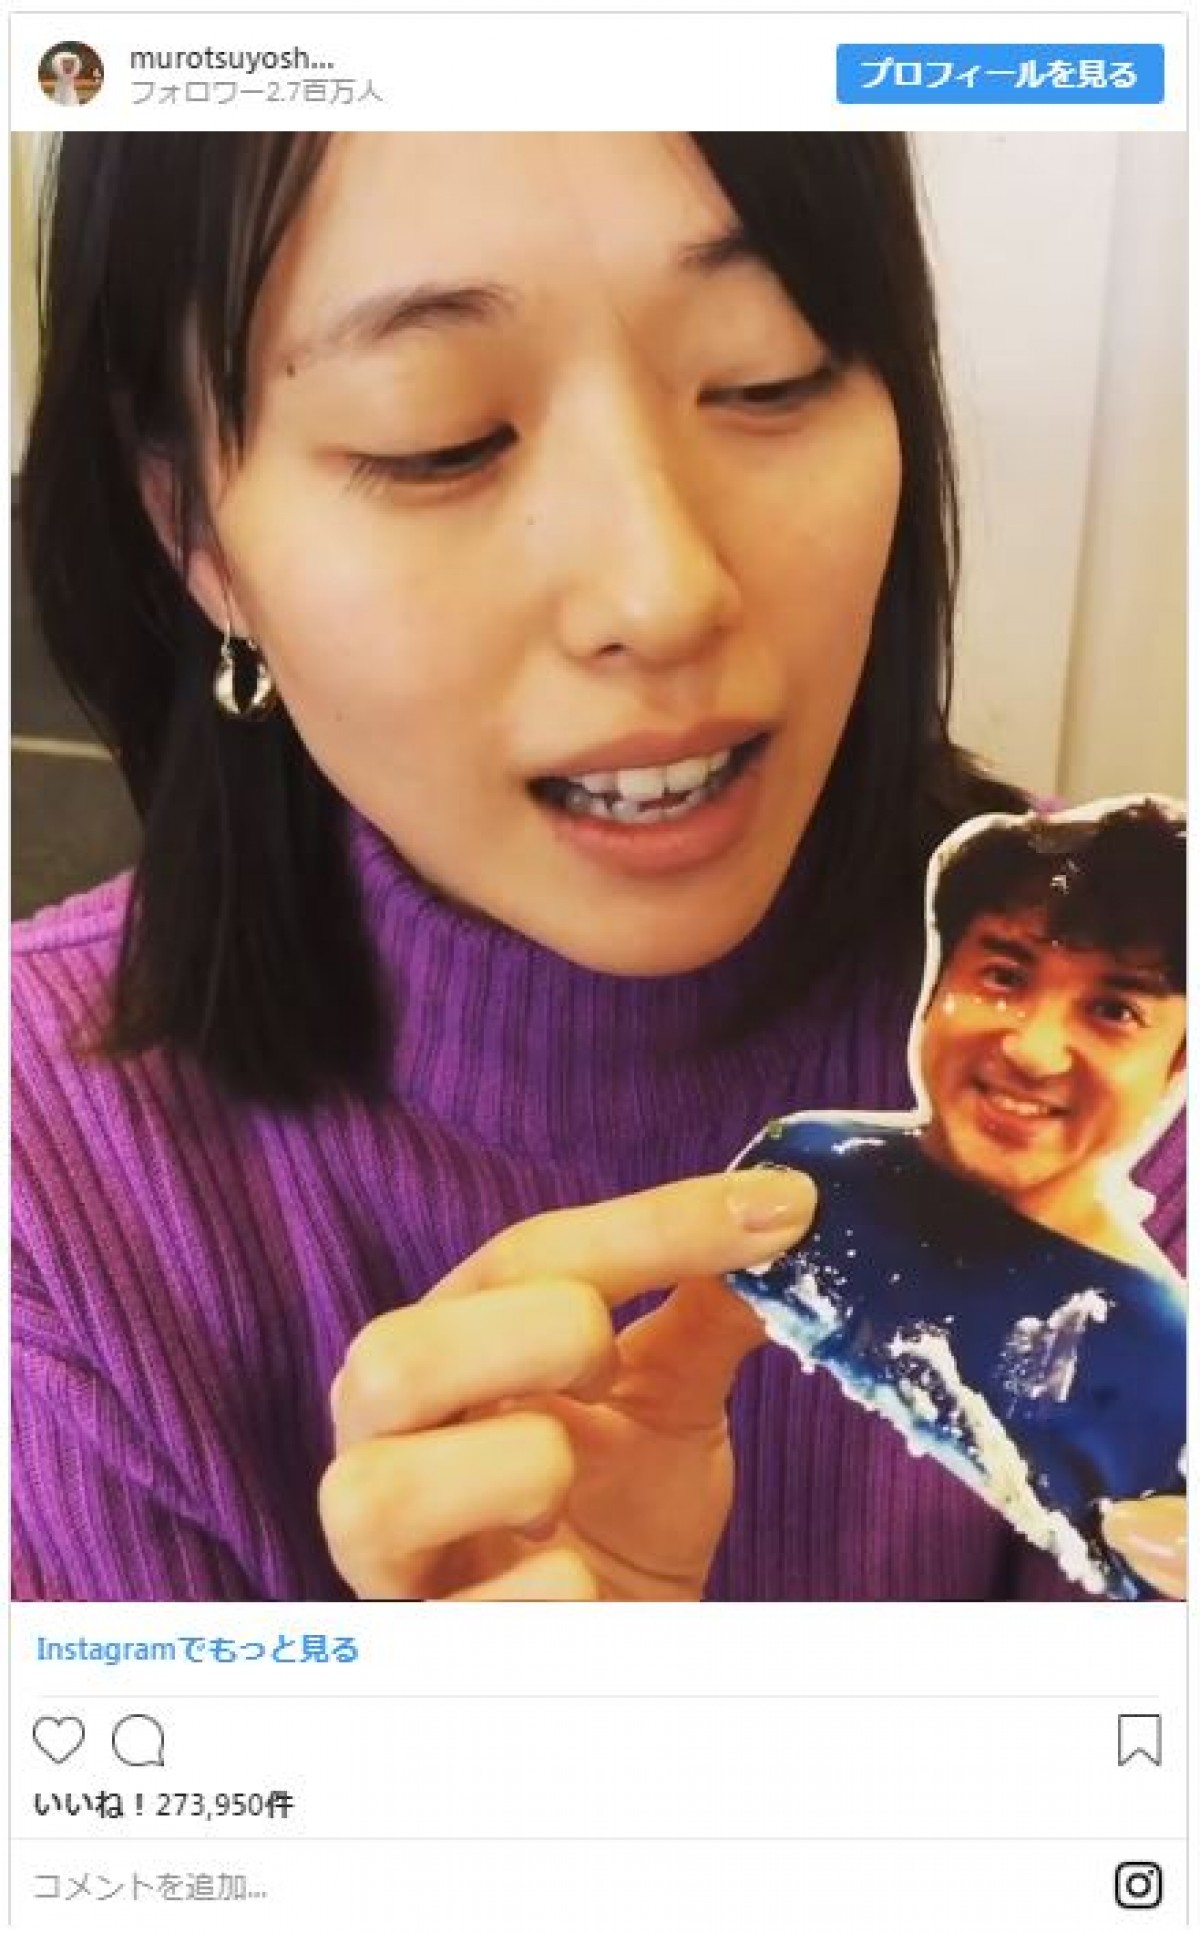 戸田恵梨香がムロツヨシを食べる!? “衝撃映像”に『大恋愛』ファンも歓喜